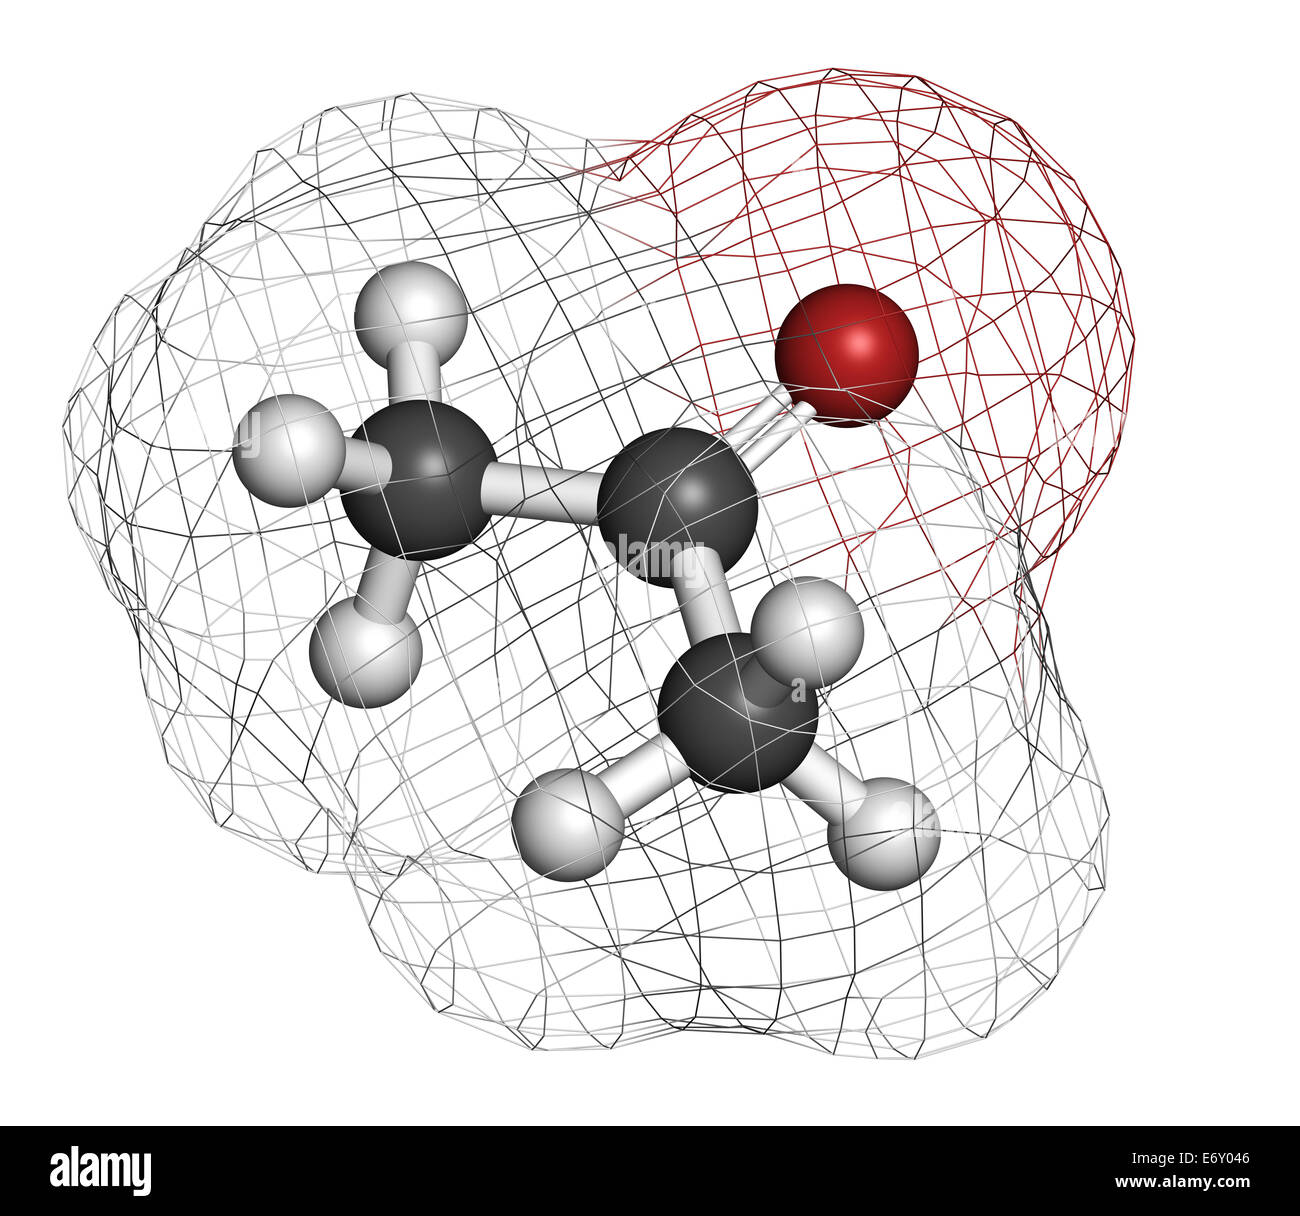 Lösungsmittel Aceton-Molekül. Organischen Lösungsmittel in  Nagellackentferner verwendet. Atome werden als Kugeln mit herkömmlichen  Farbe dargestellt Stockfotografie - Alamy